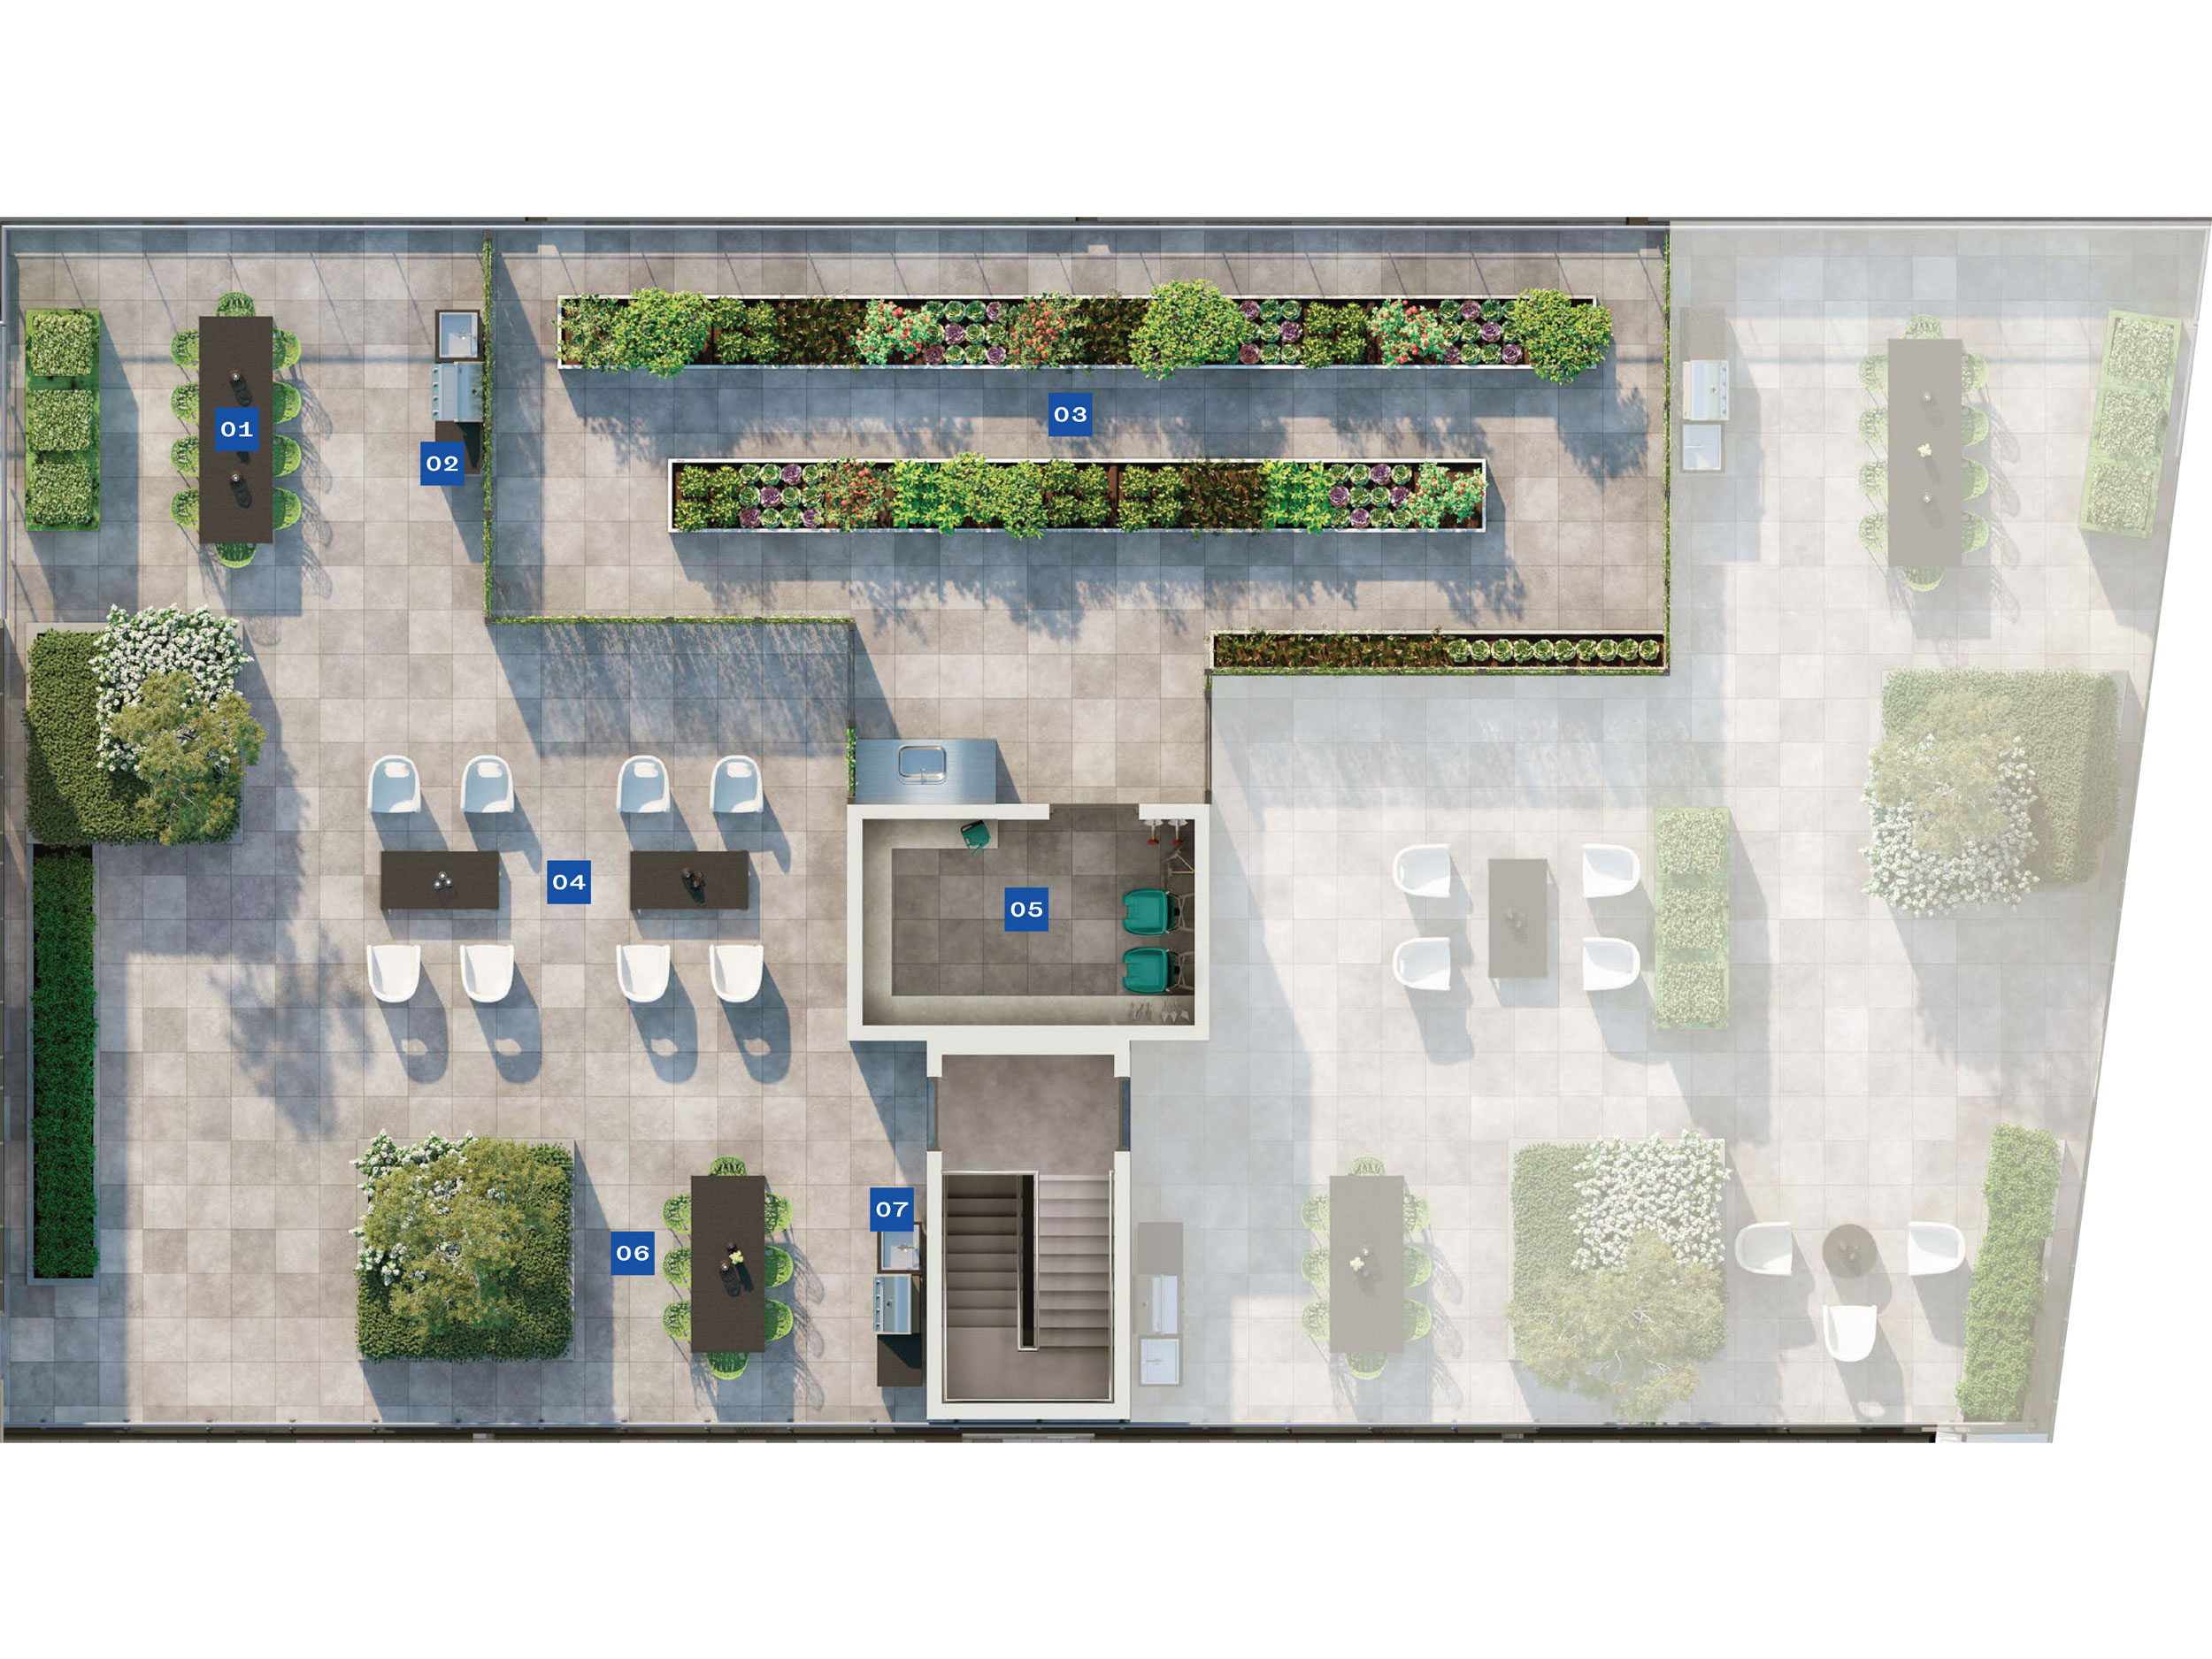 MRKT Alexandra Park 5th Floor Amenity Plan